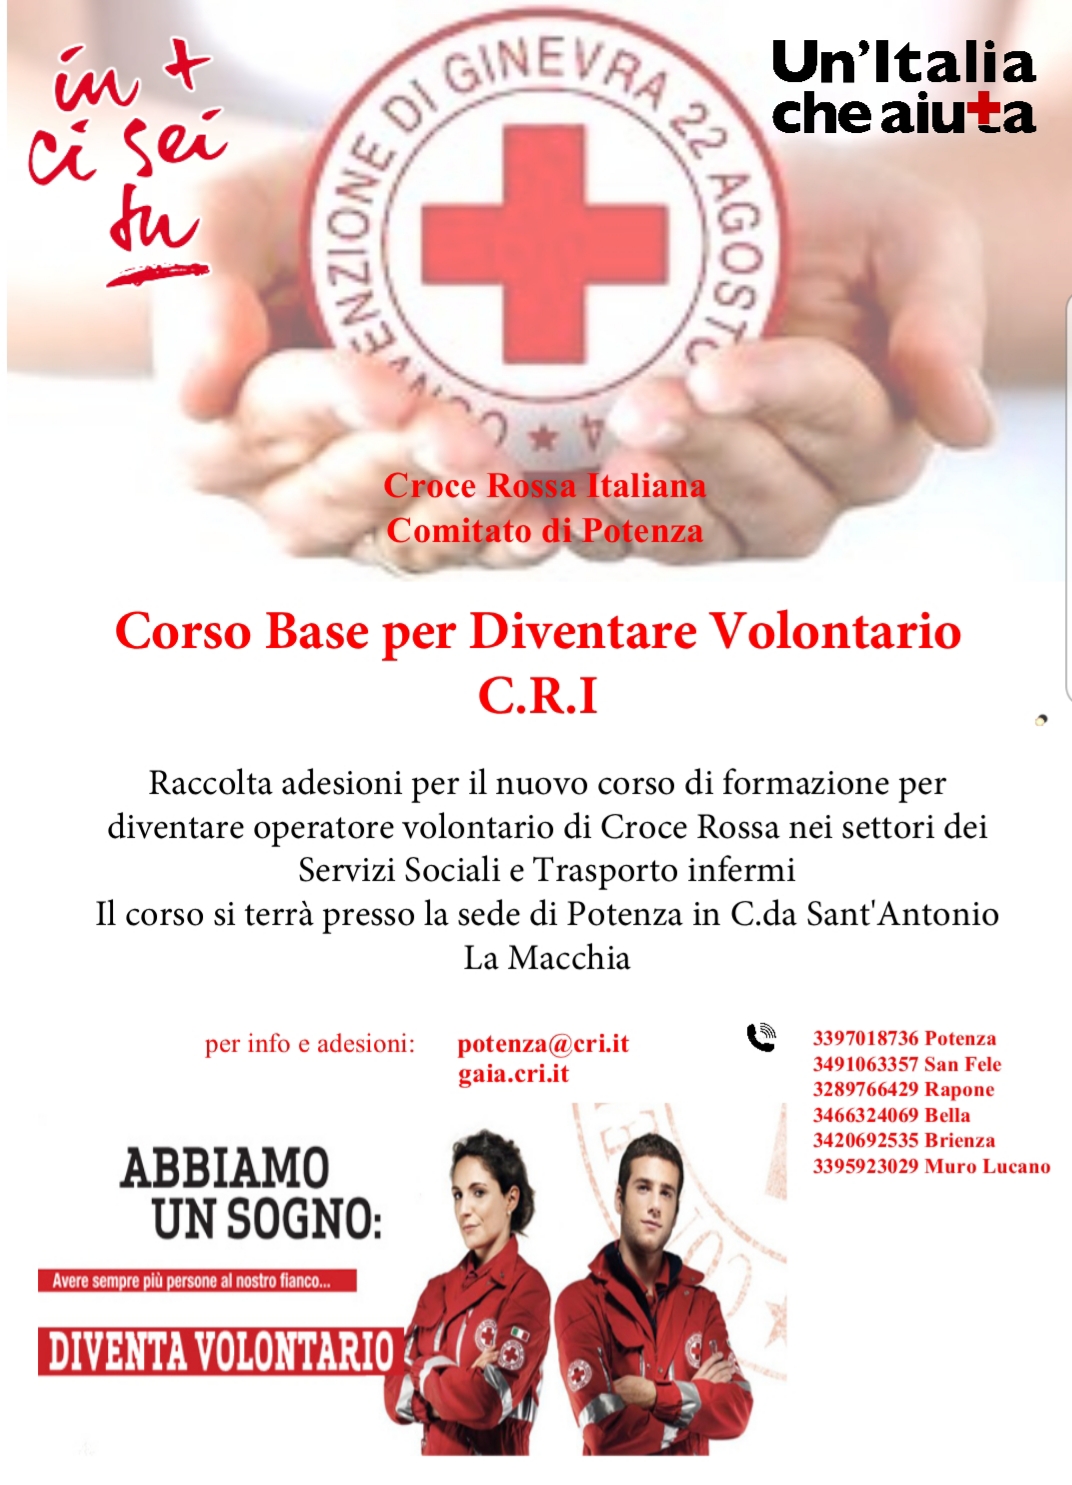 Comitato di Potenza - Croce Rossa Italiana - Comitato di Potenza